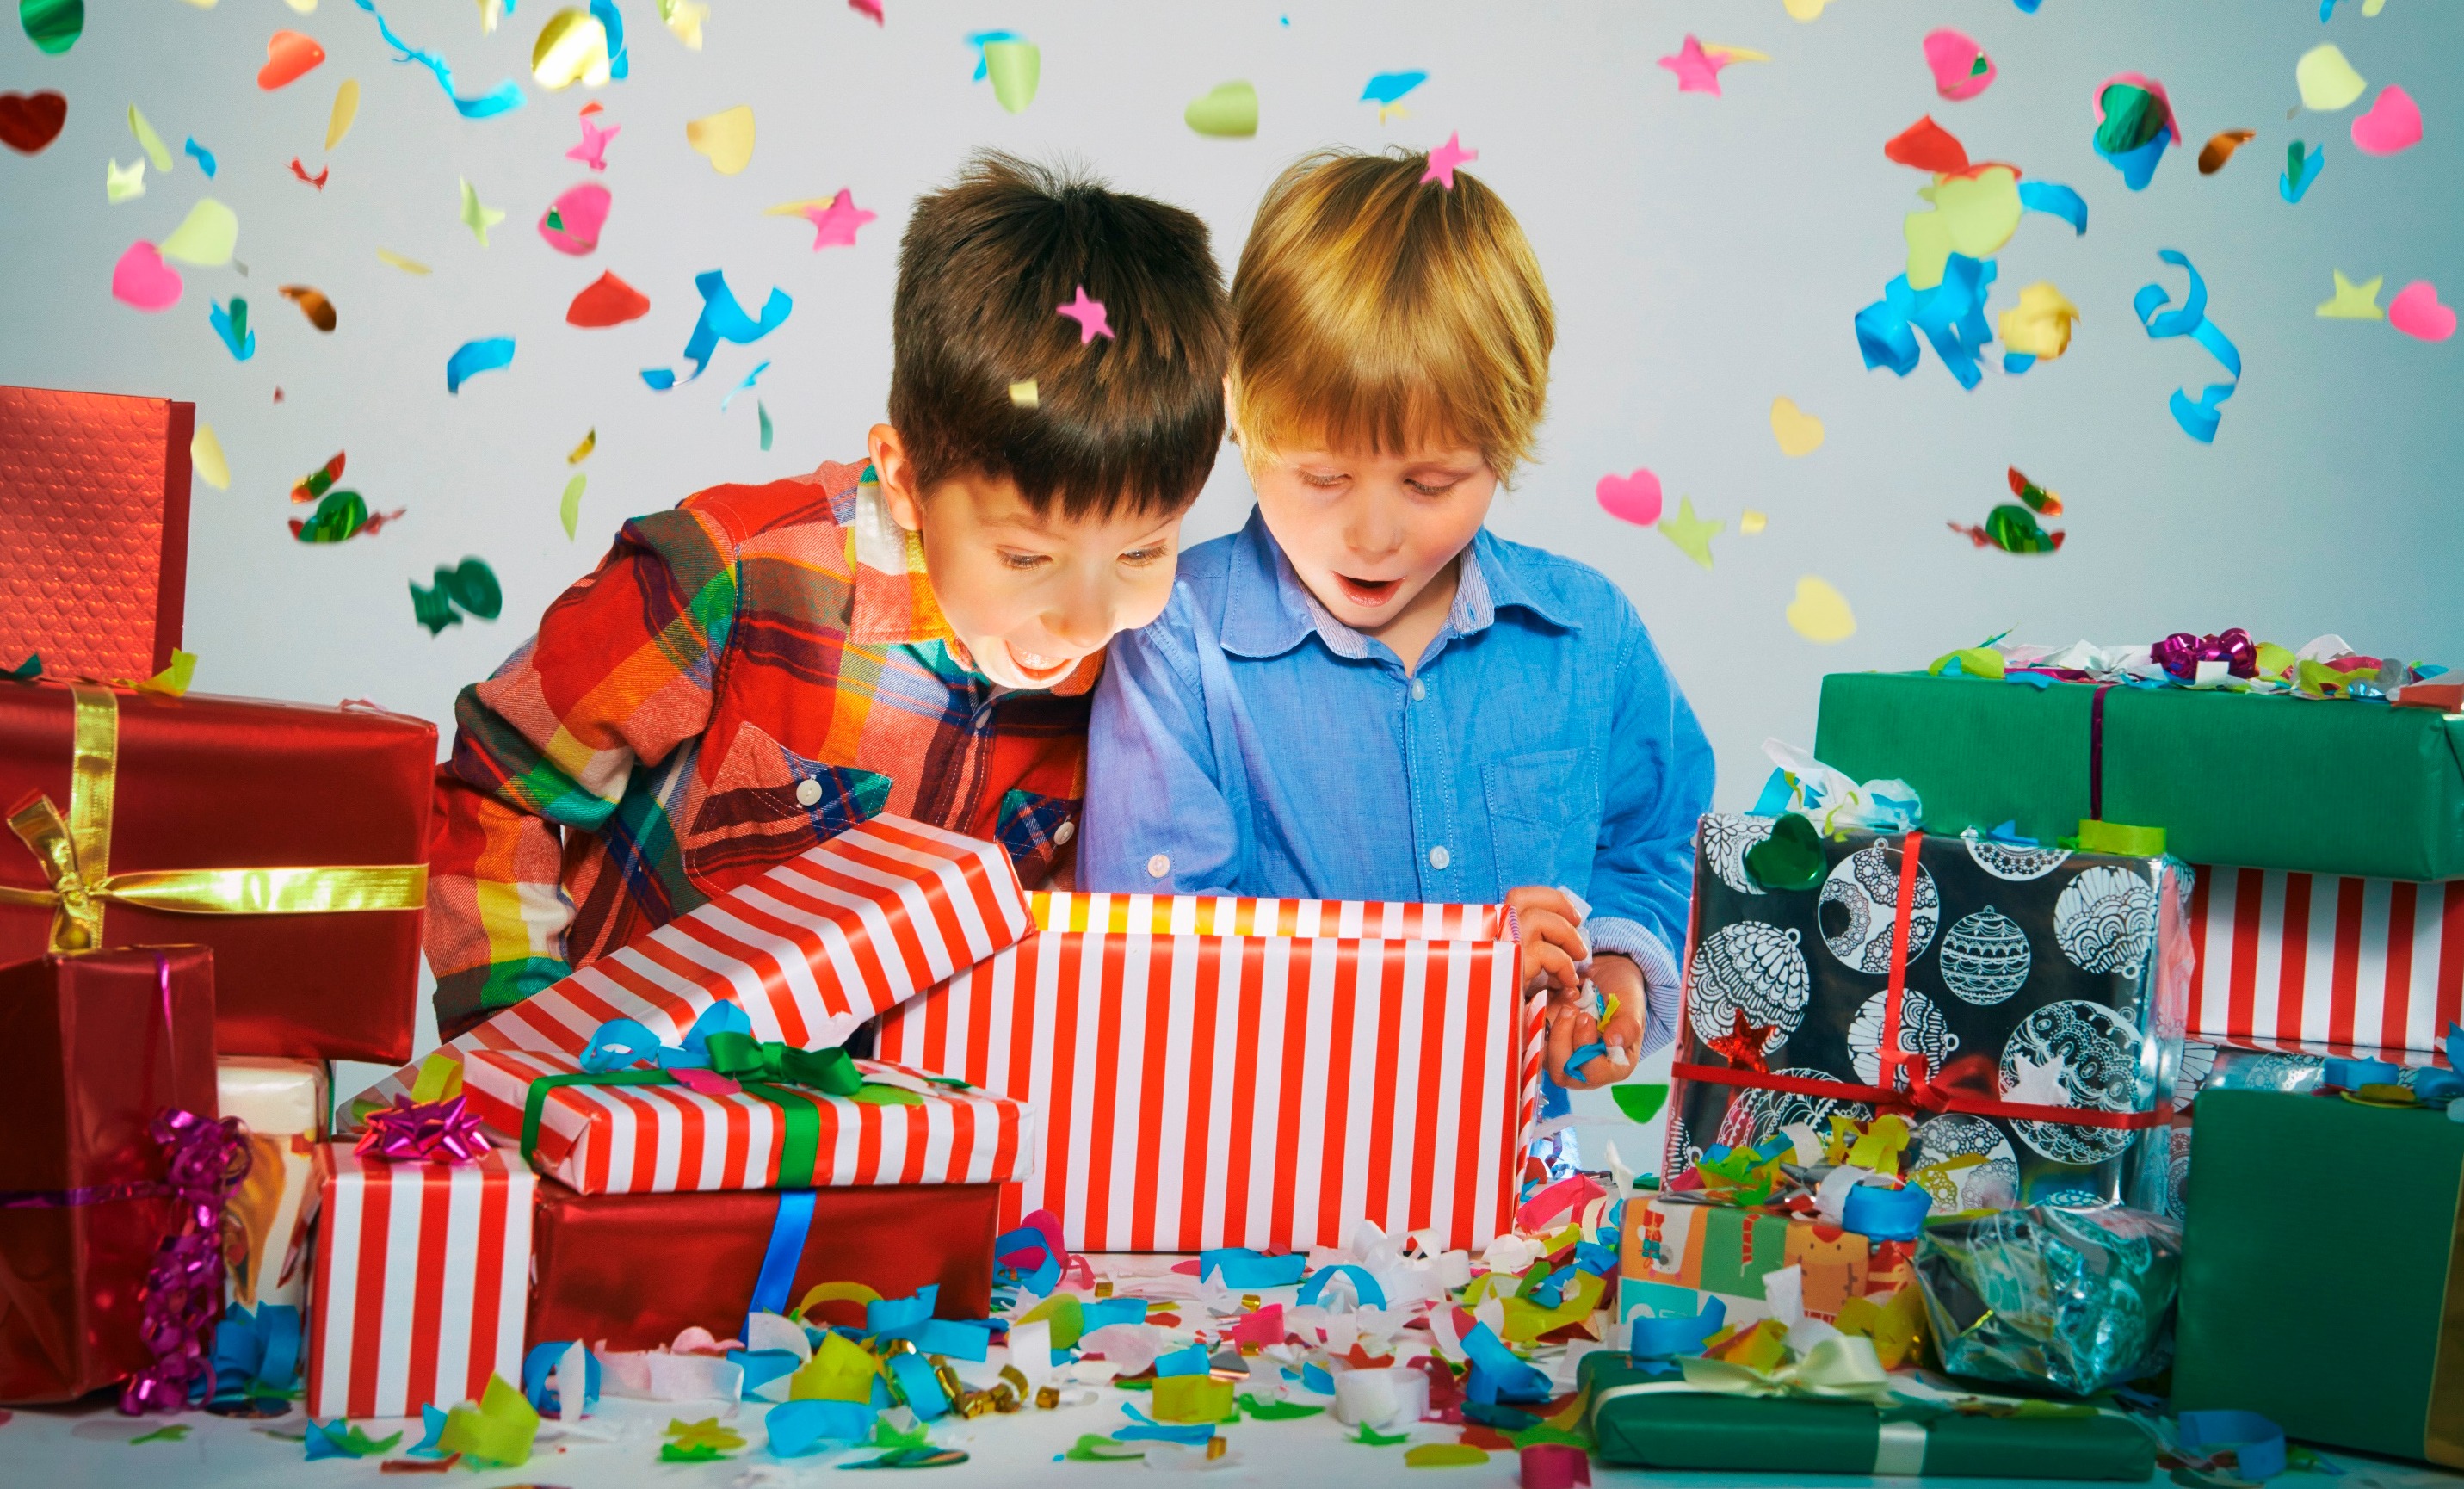 Что подарить ребенку на 2 года - топ идей подарков на день рождения малыша